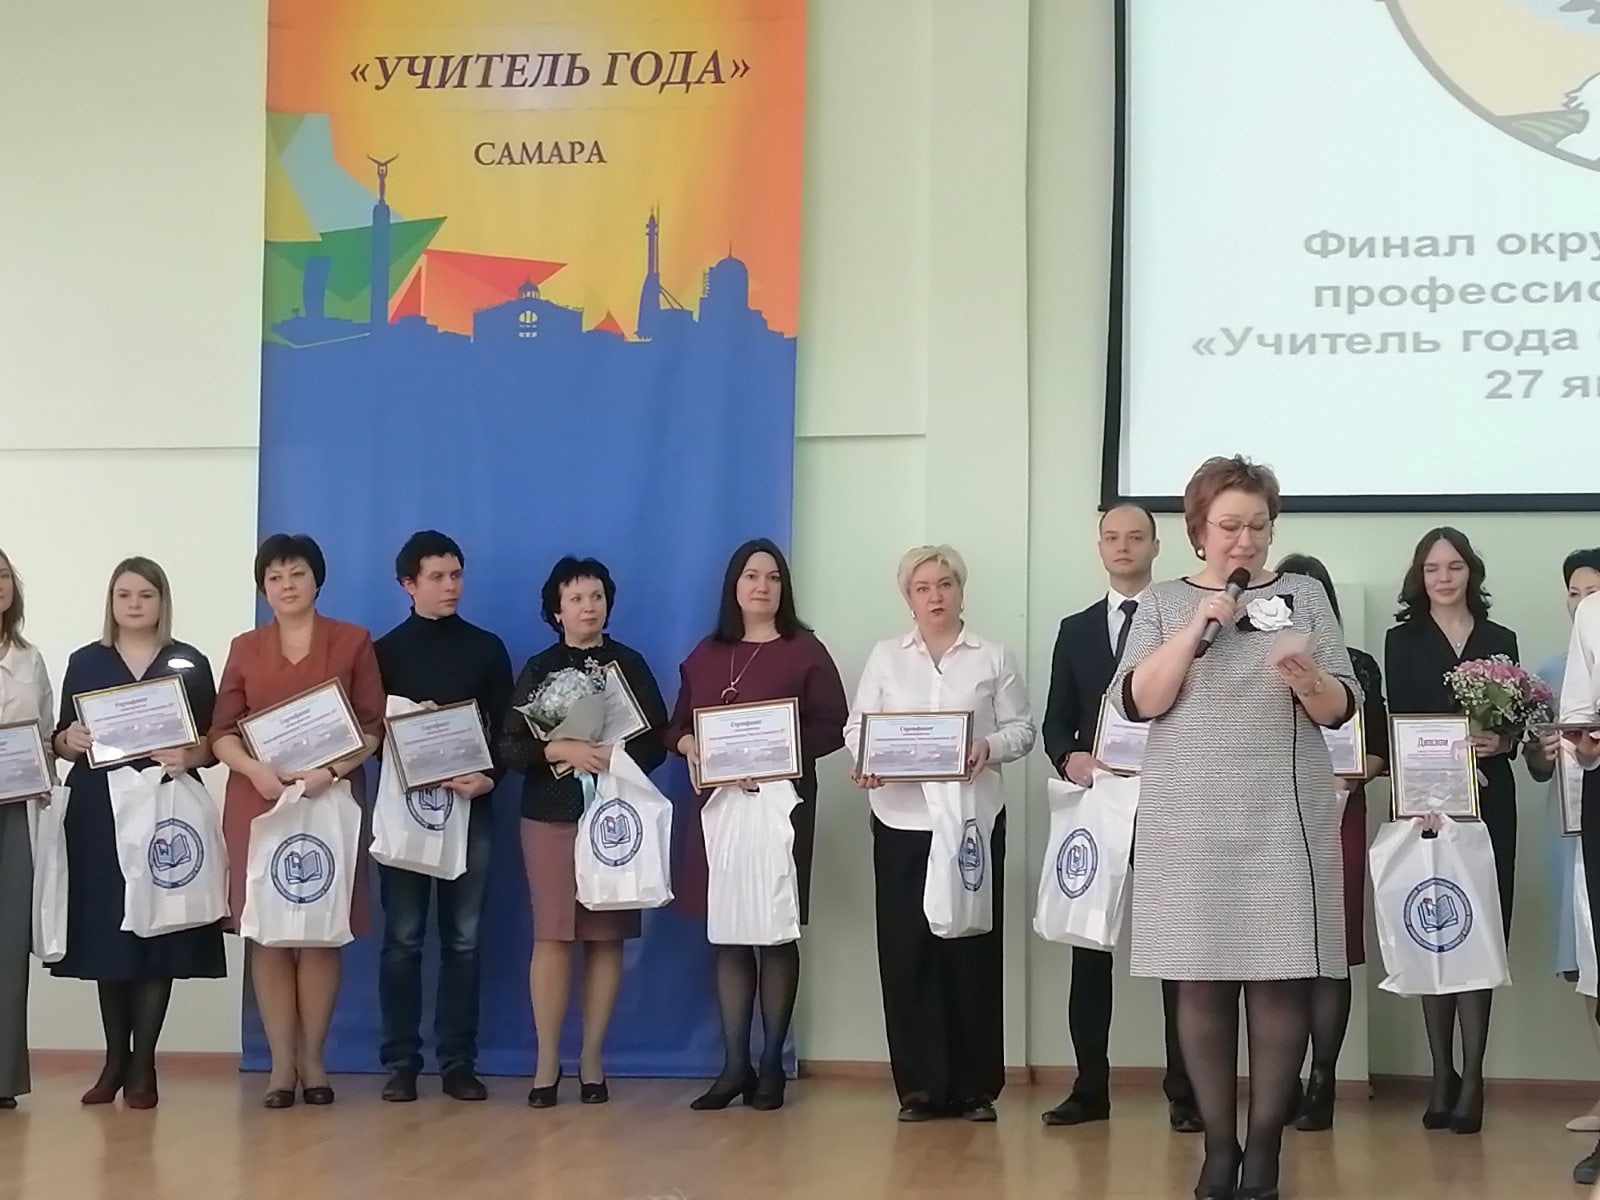 Марина Владимировна в числе лучших 20-ти учителей города Самары!